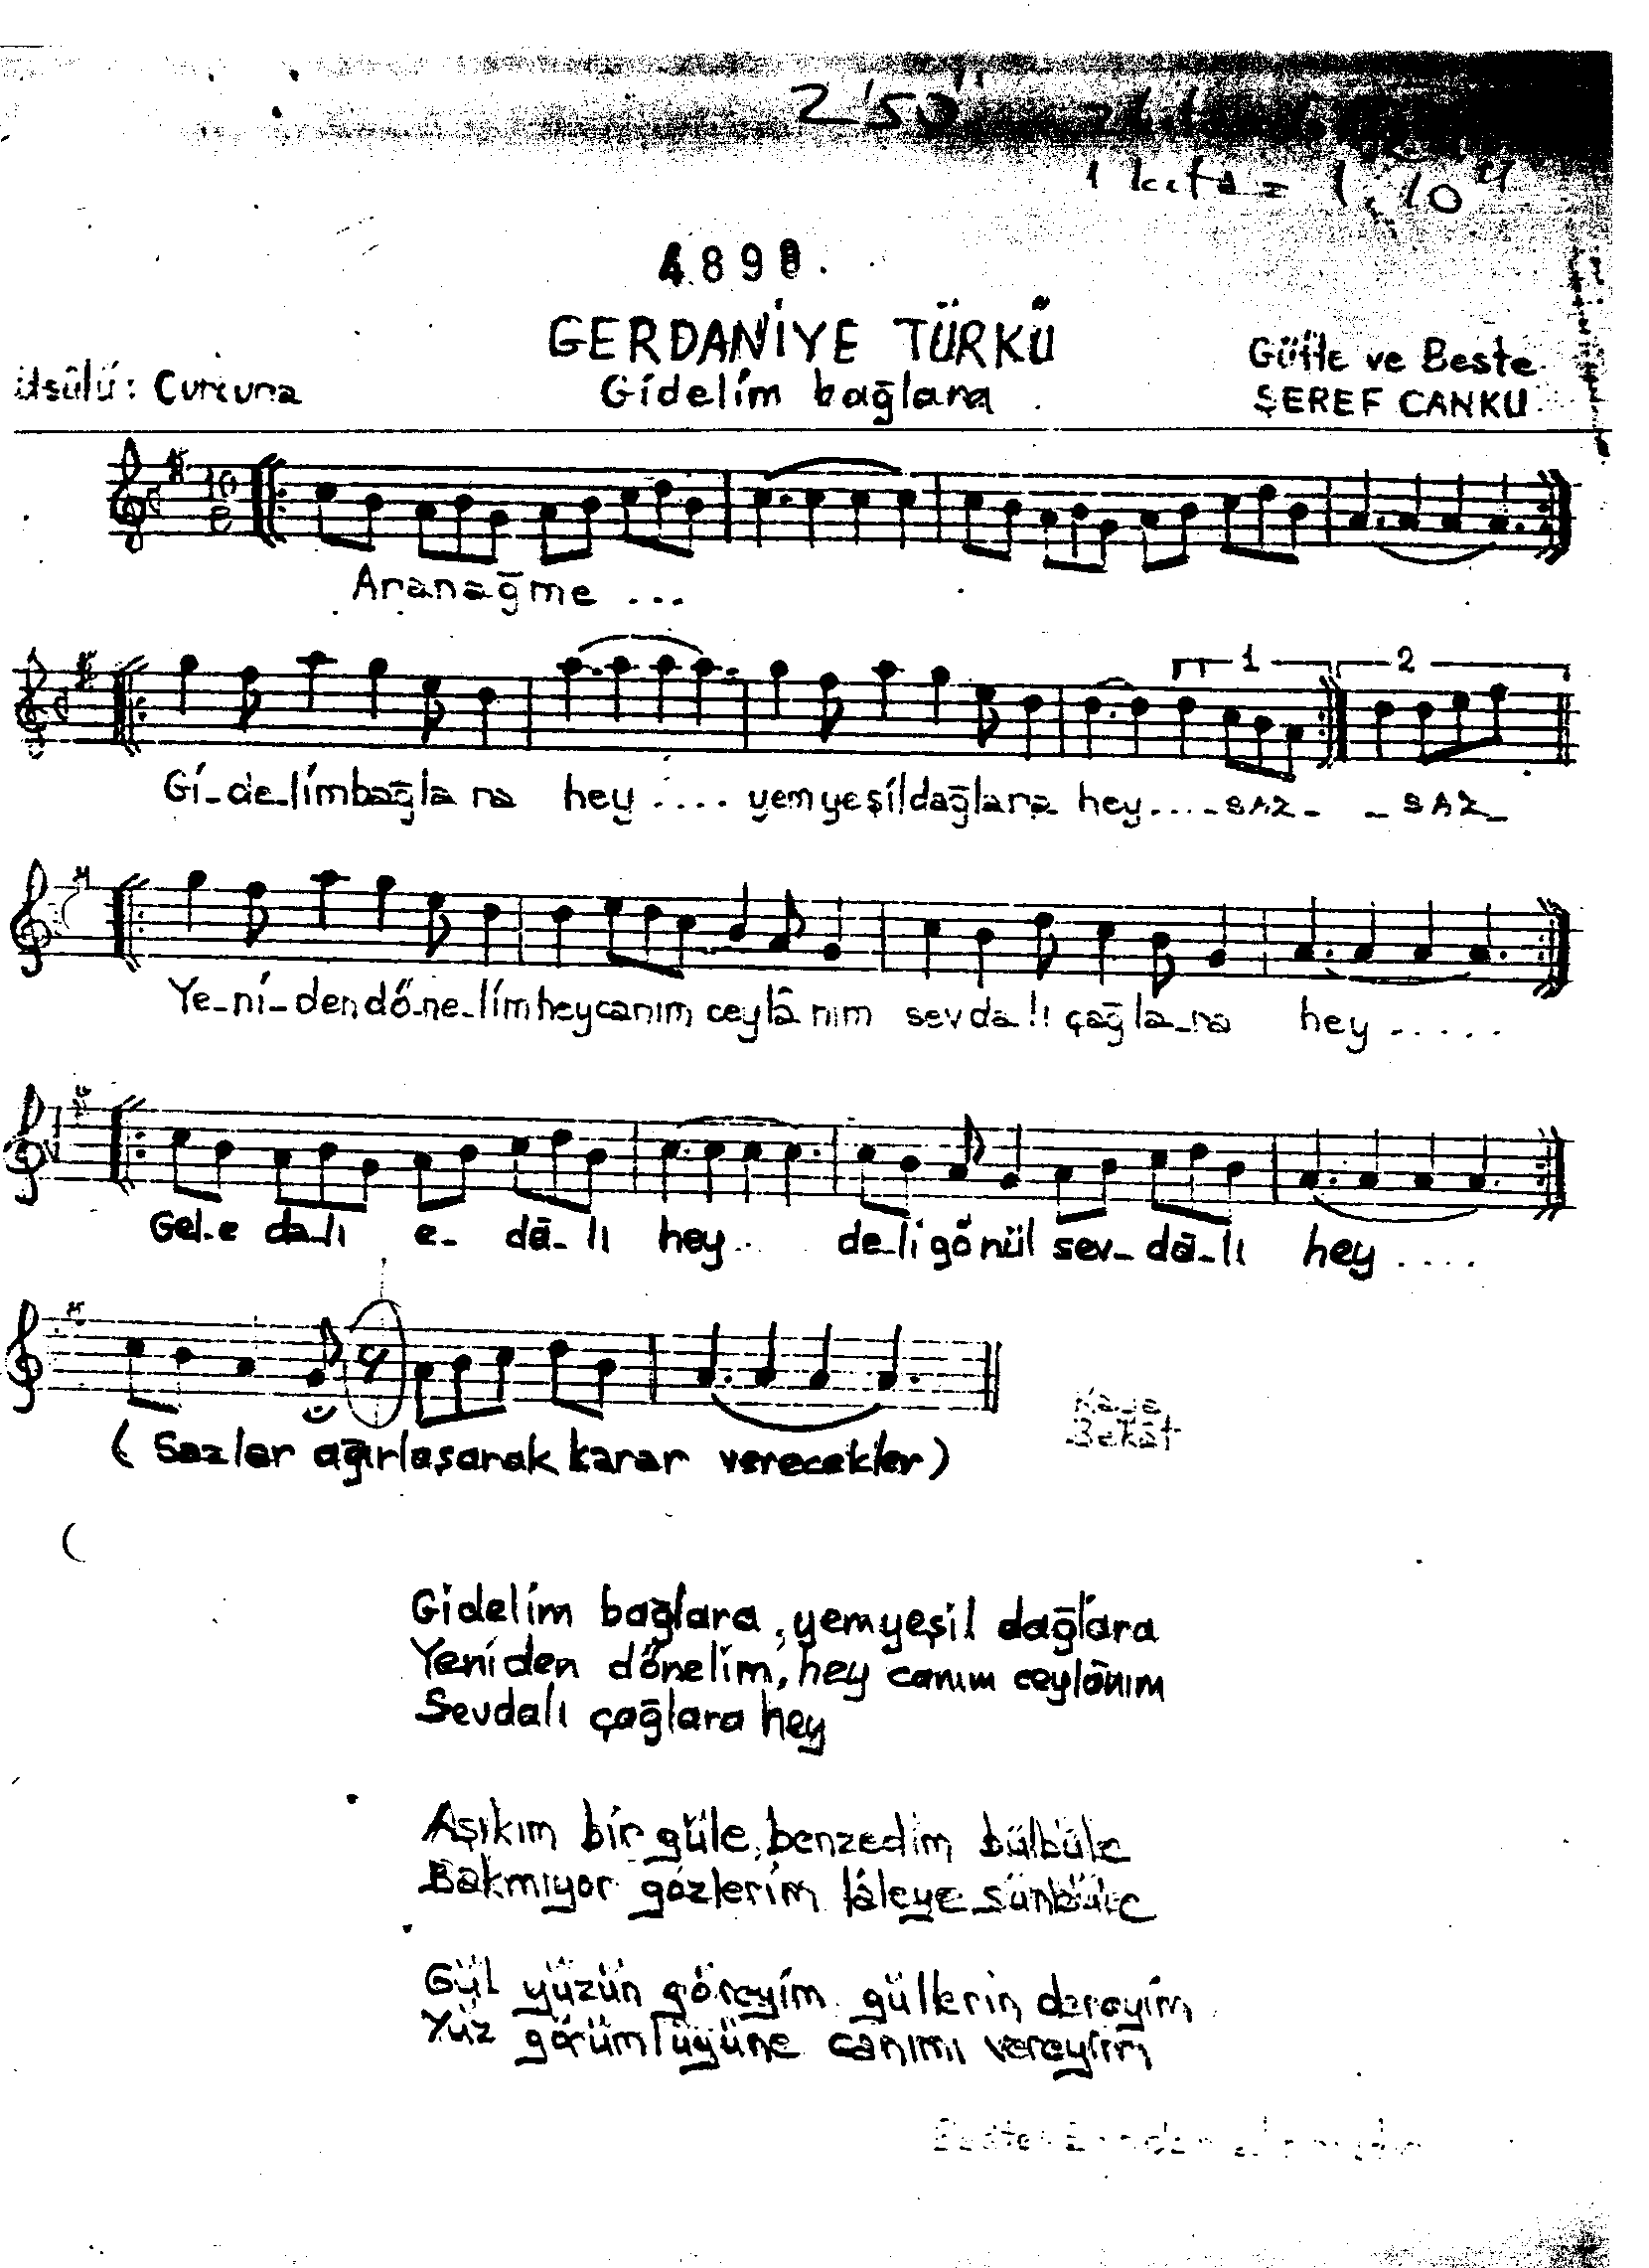 Gerdâniye - Şarkı - Şeref Canku - Sayfa 1